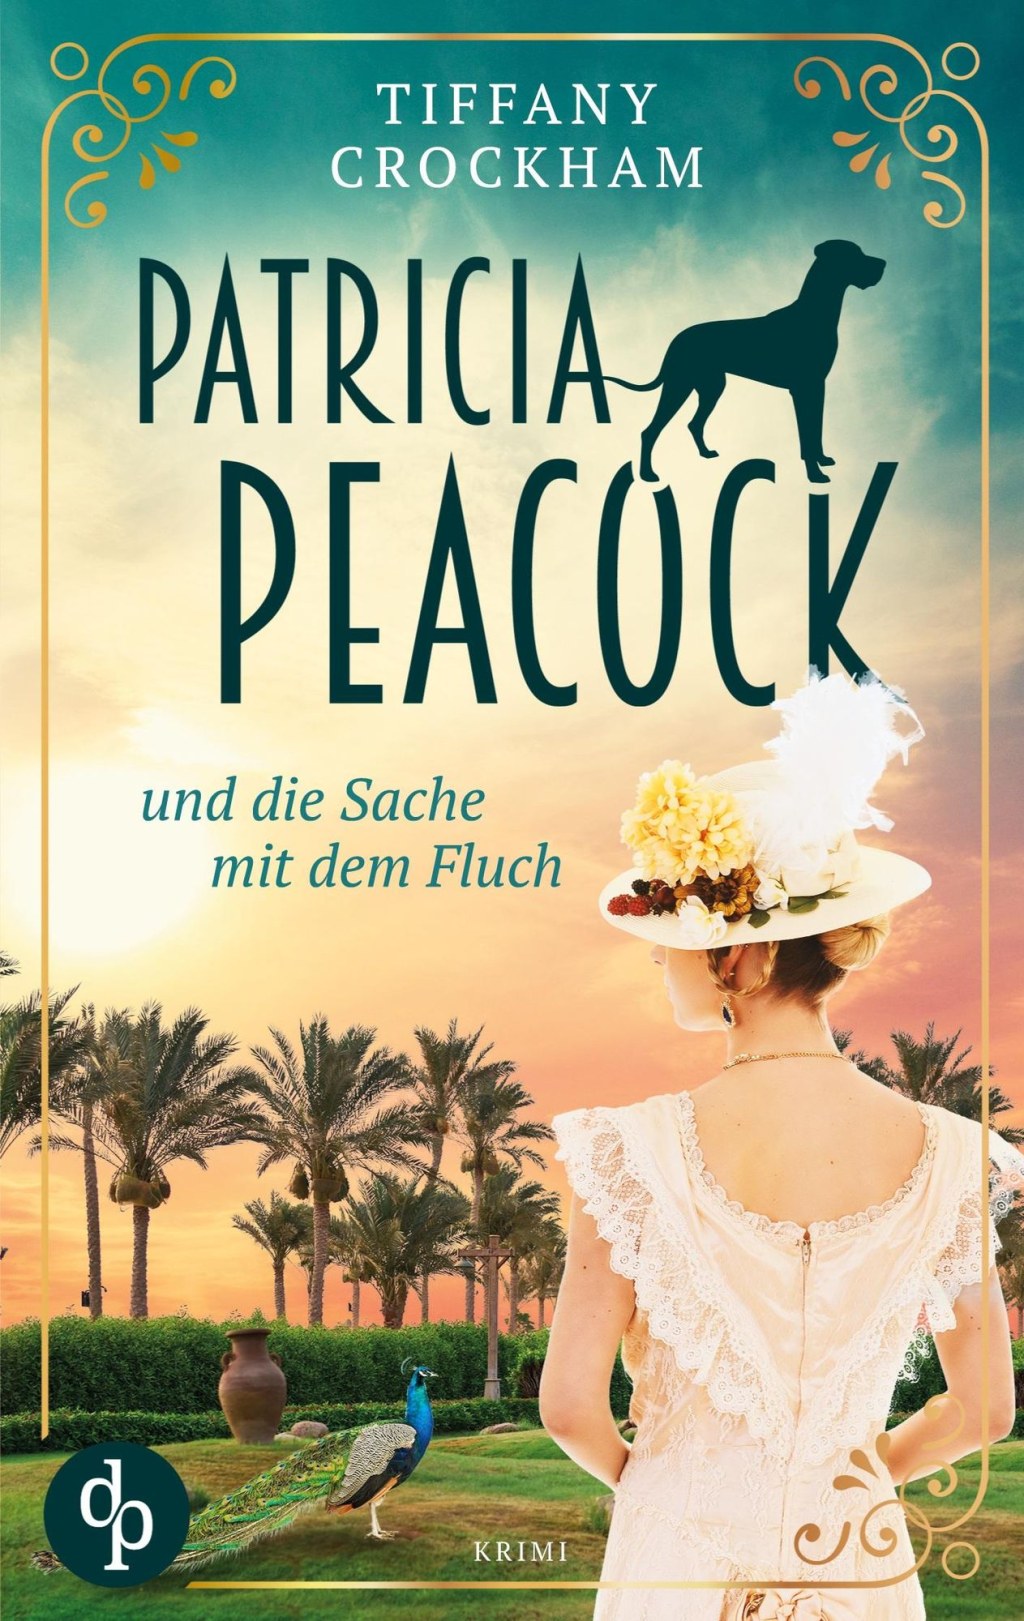 Picture of: Patricia Peacock und die Sache mit dem Fluch von Tiffany Crockham – Buch   Thalia